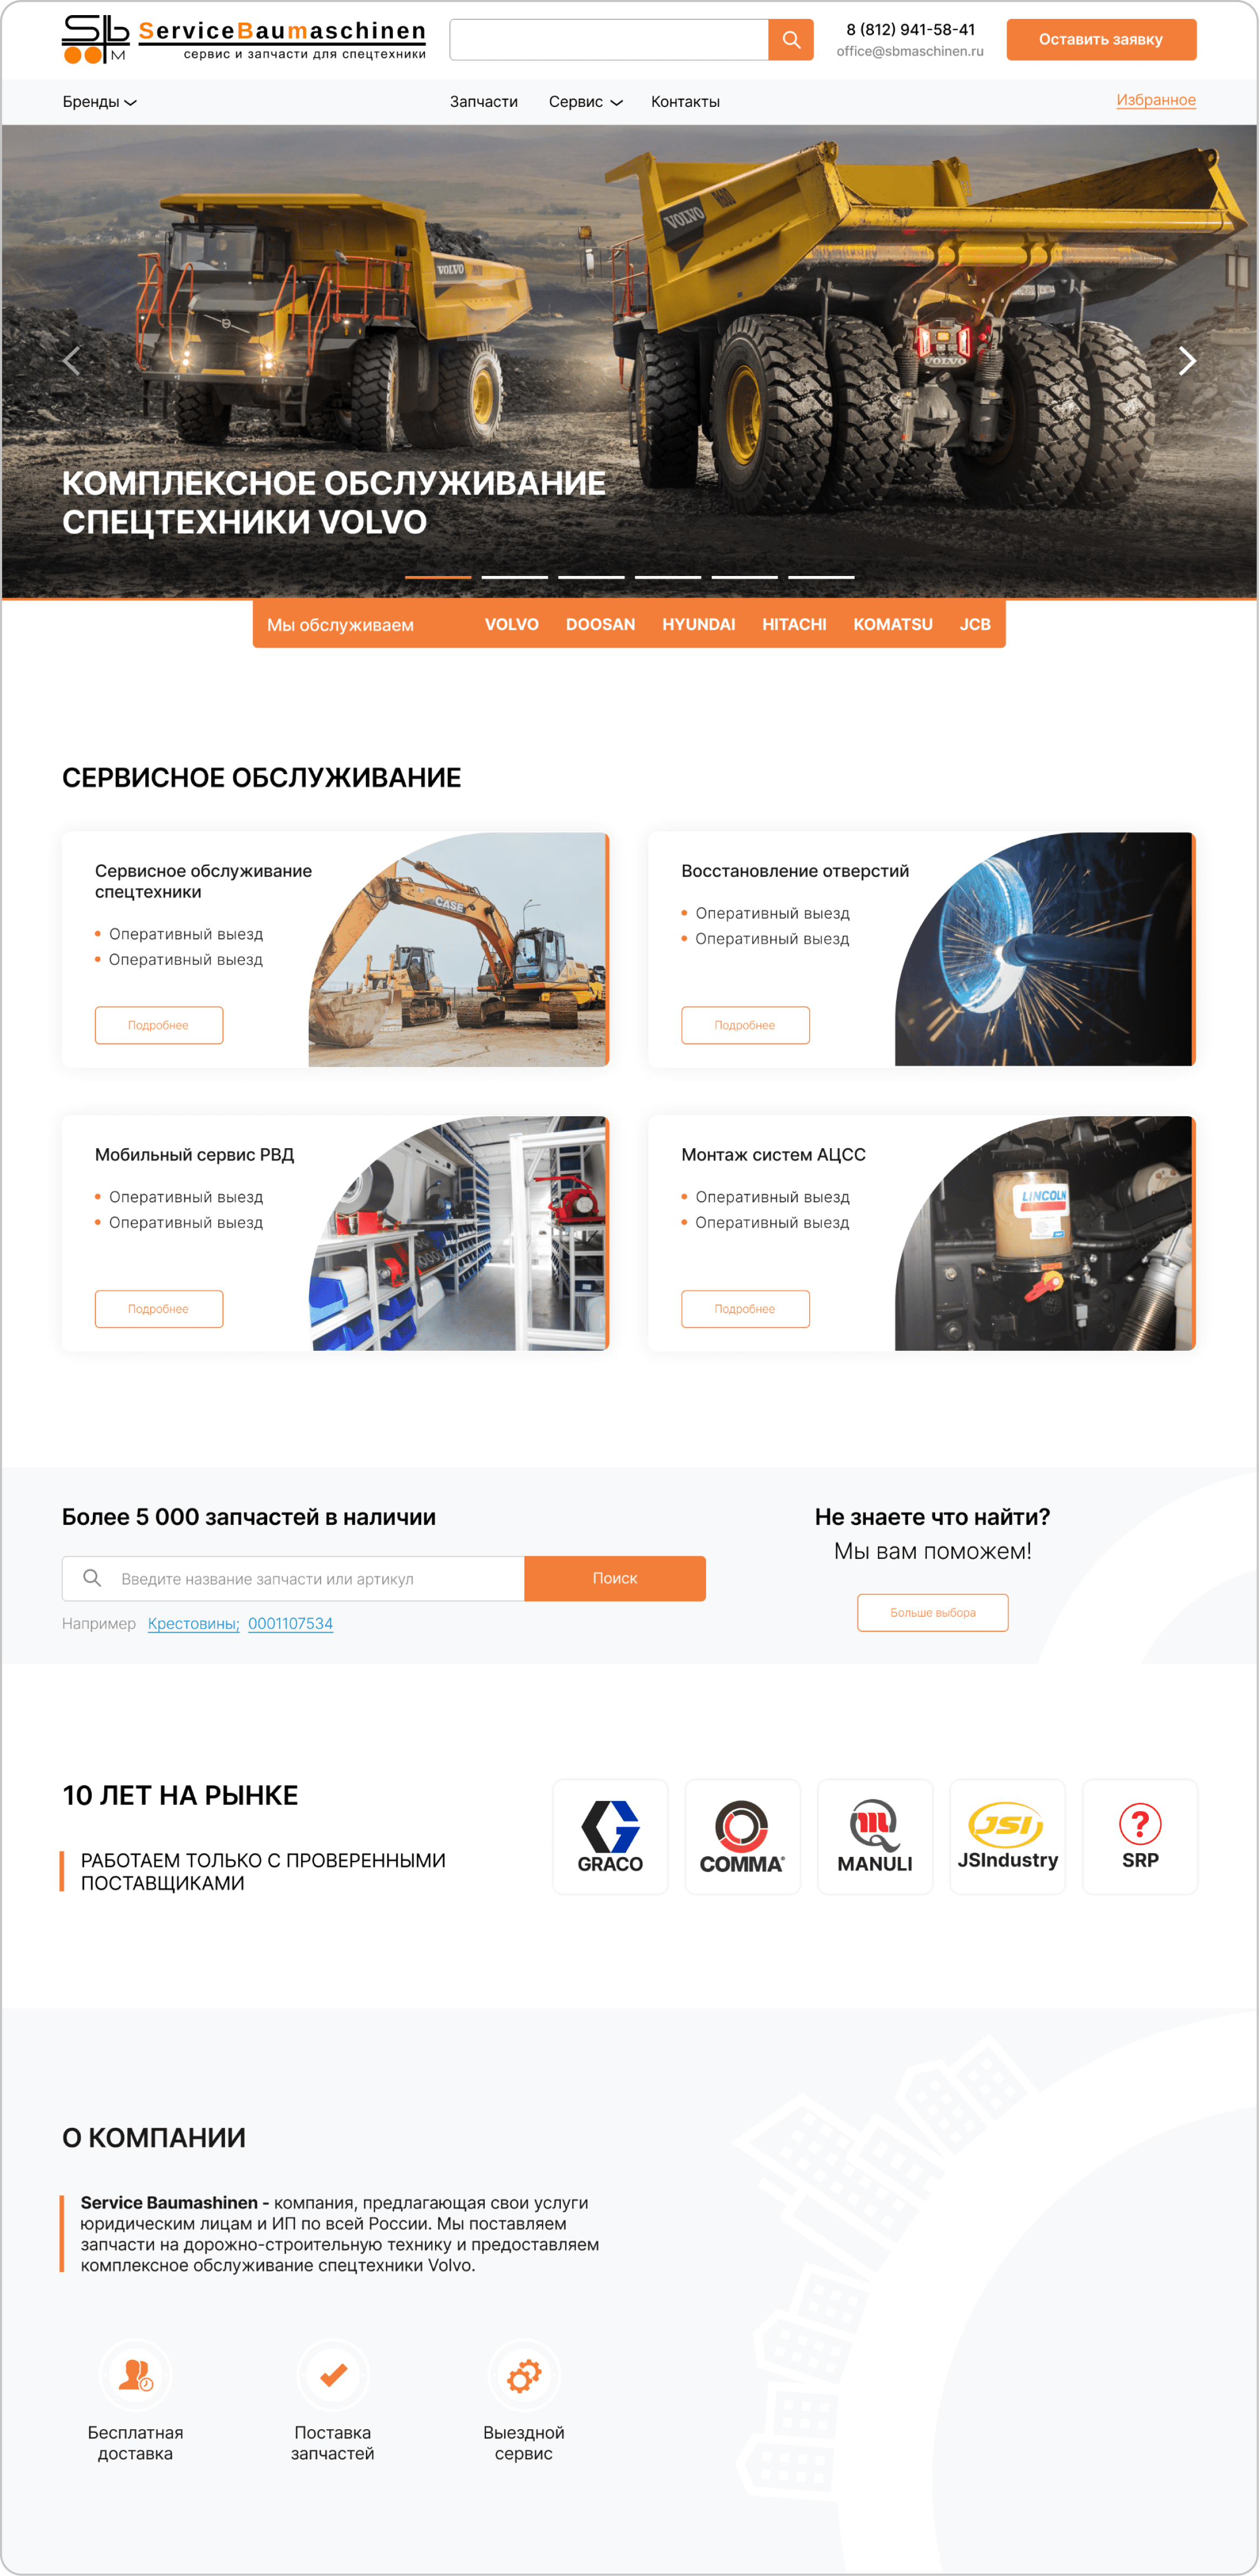 Дизайн сайта - Сайт по продаже запчастей для спецтехники компании Service Baumaschinen - 4